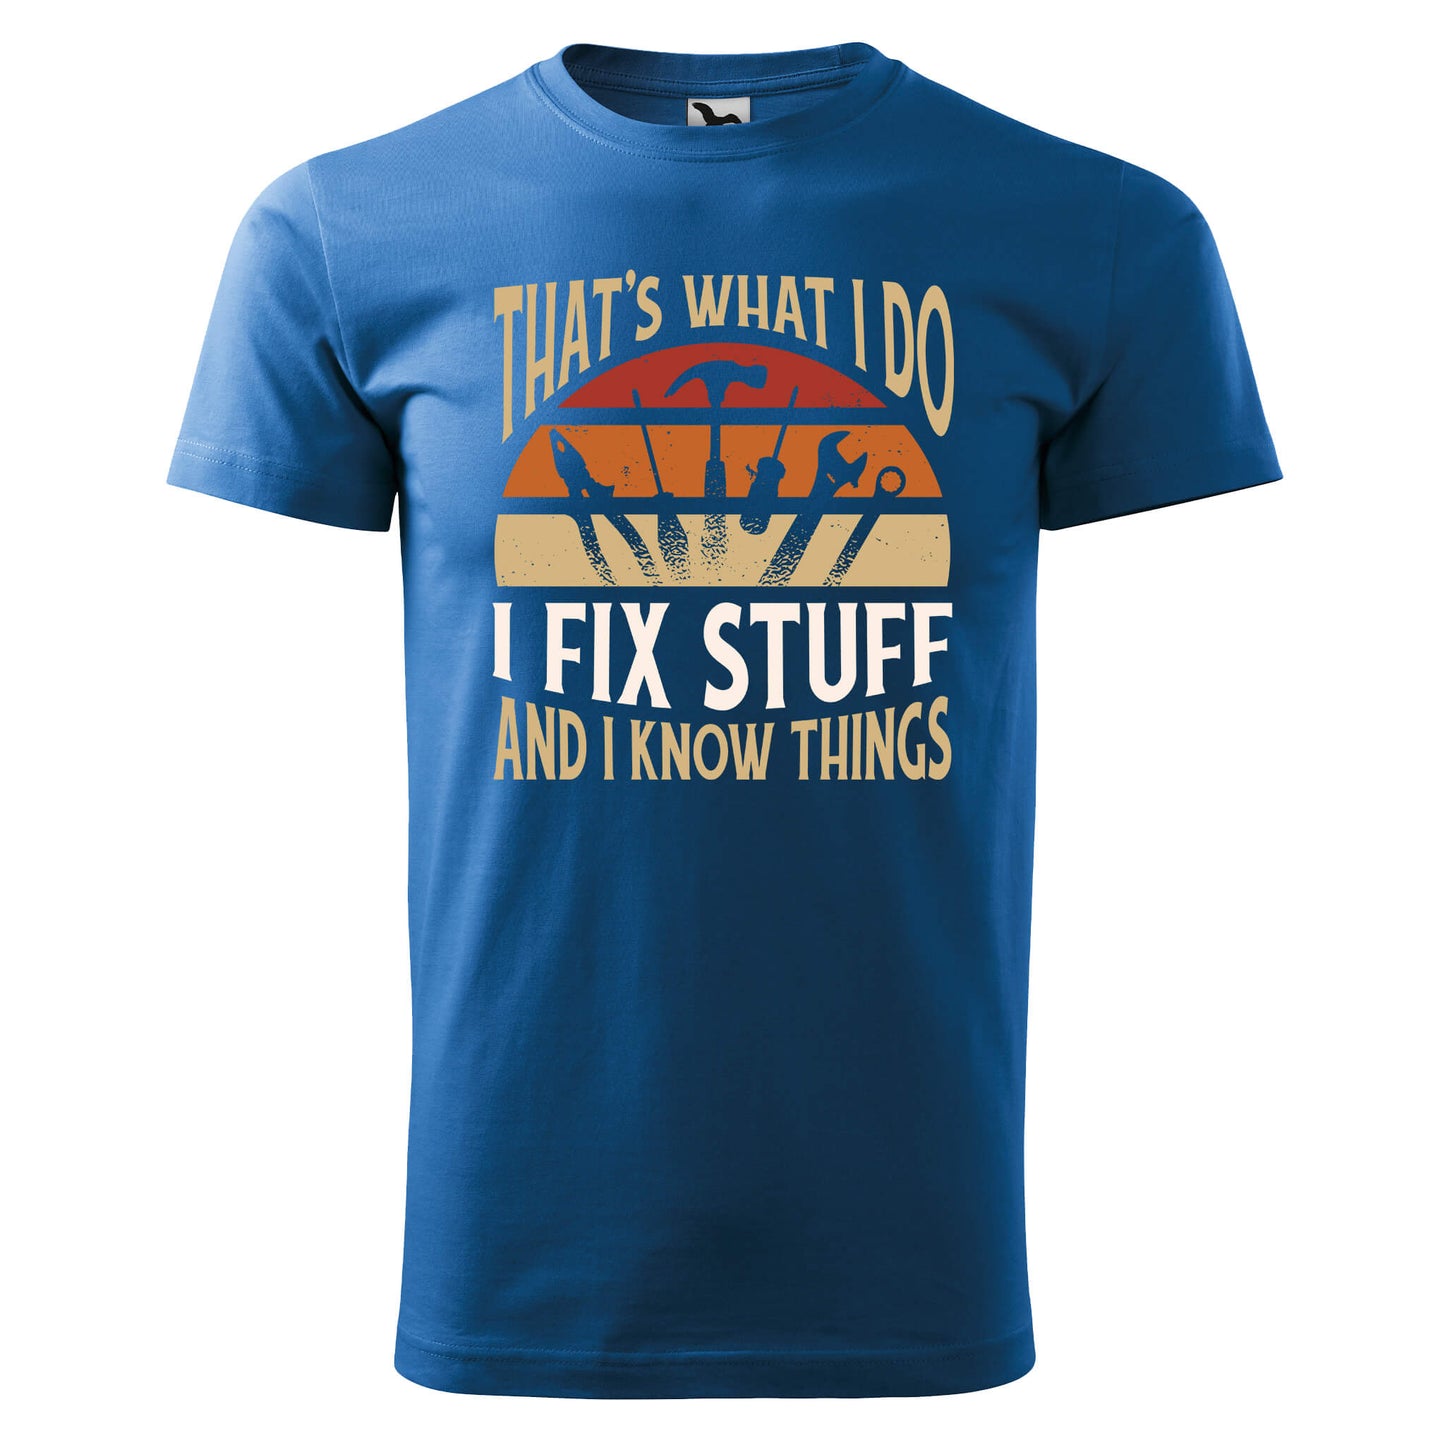 Fix stuff t-shirt - rvdesignprint